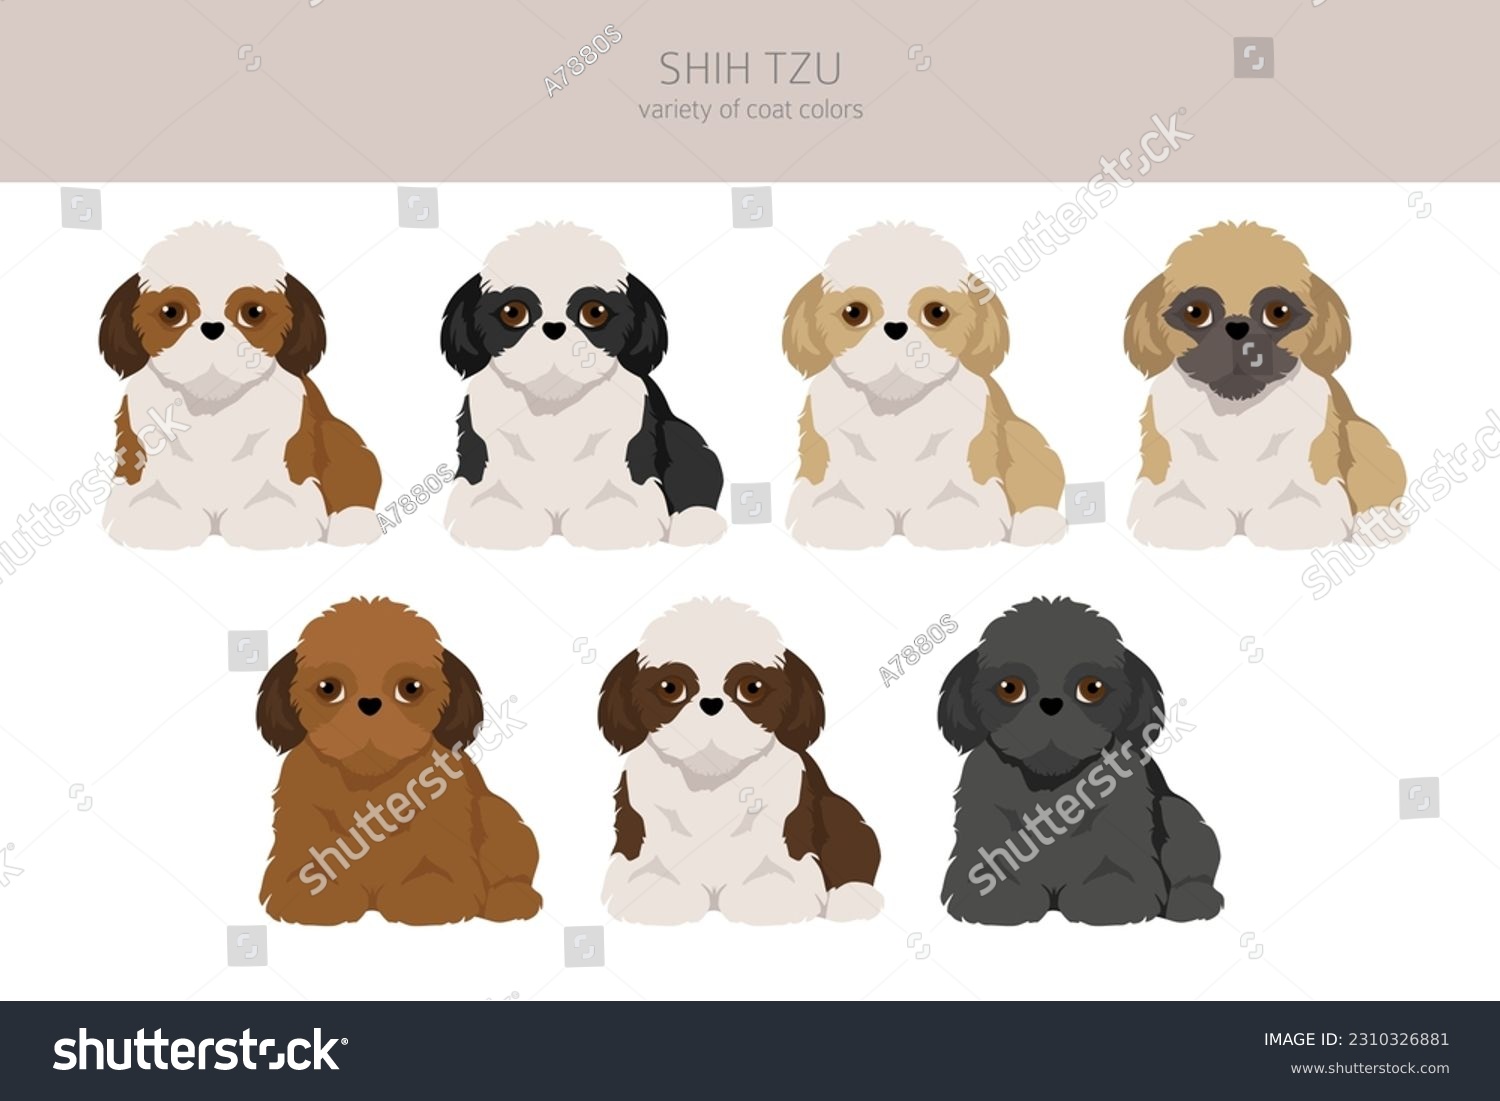 SVG of Shih Tzu puppy, coat colors set.  Vector illustration svg